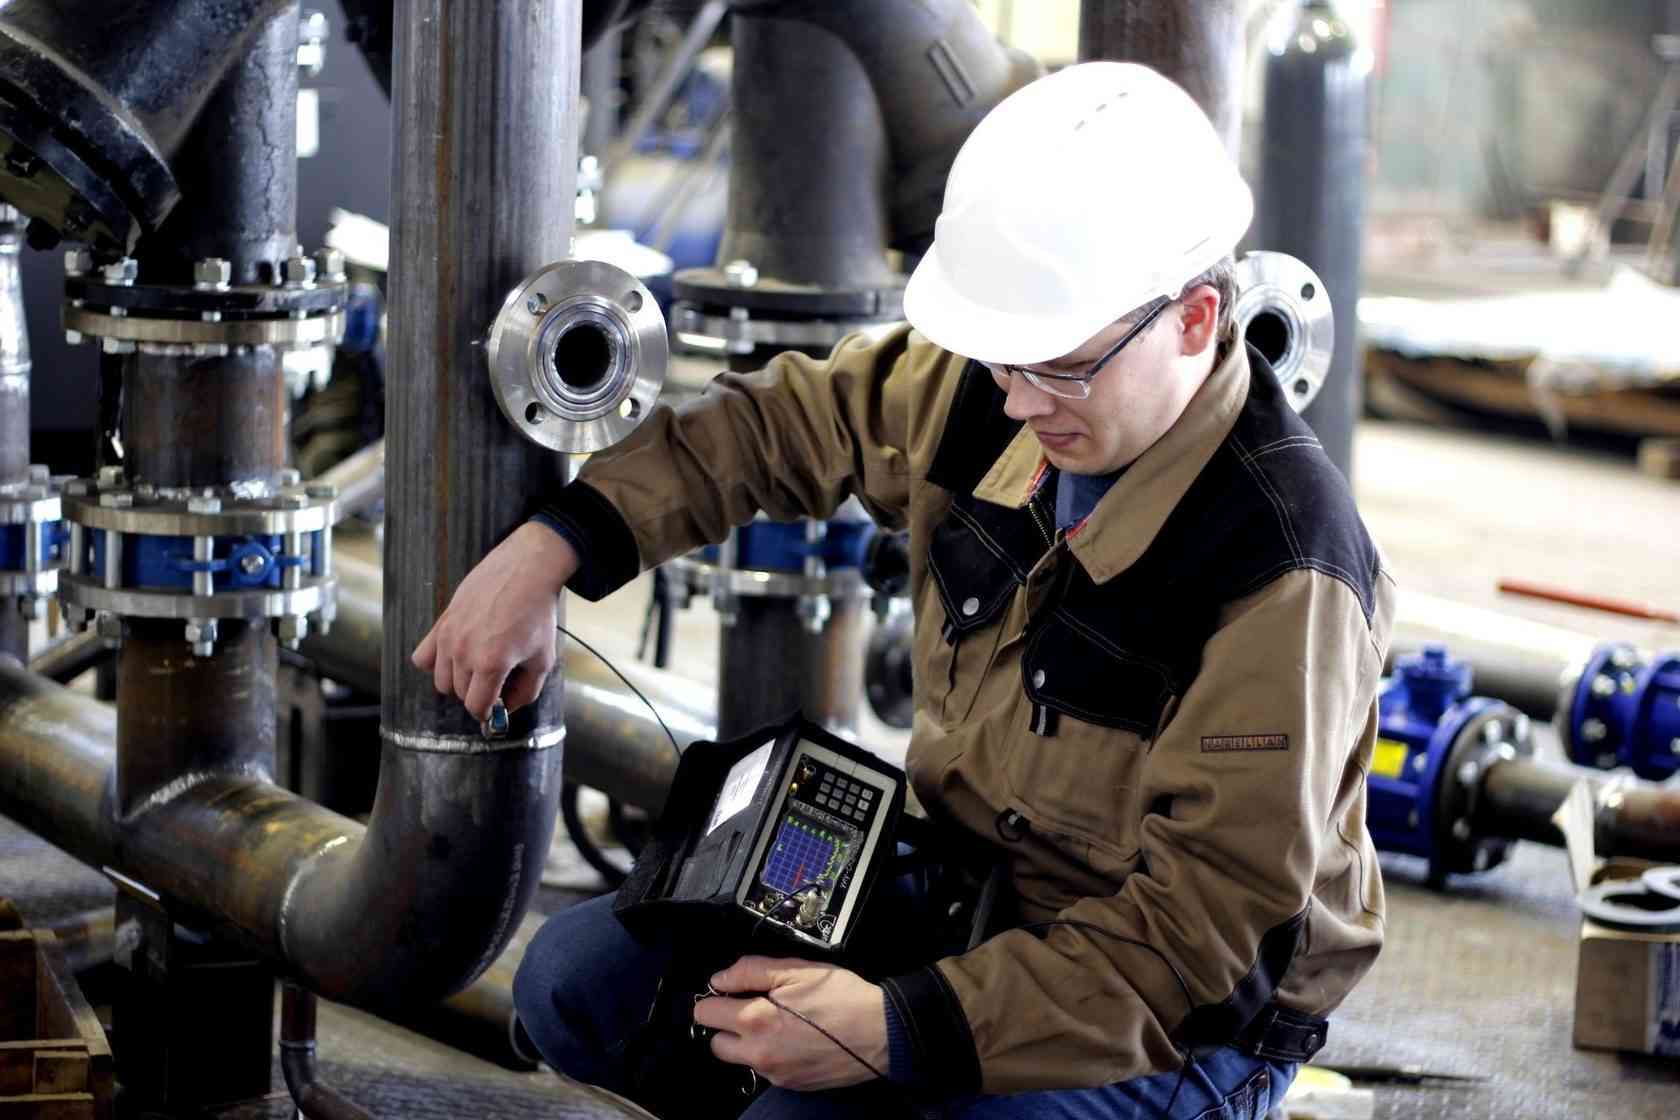 Диагностирование оборудования нефтехимической отрасли